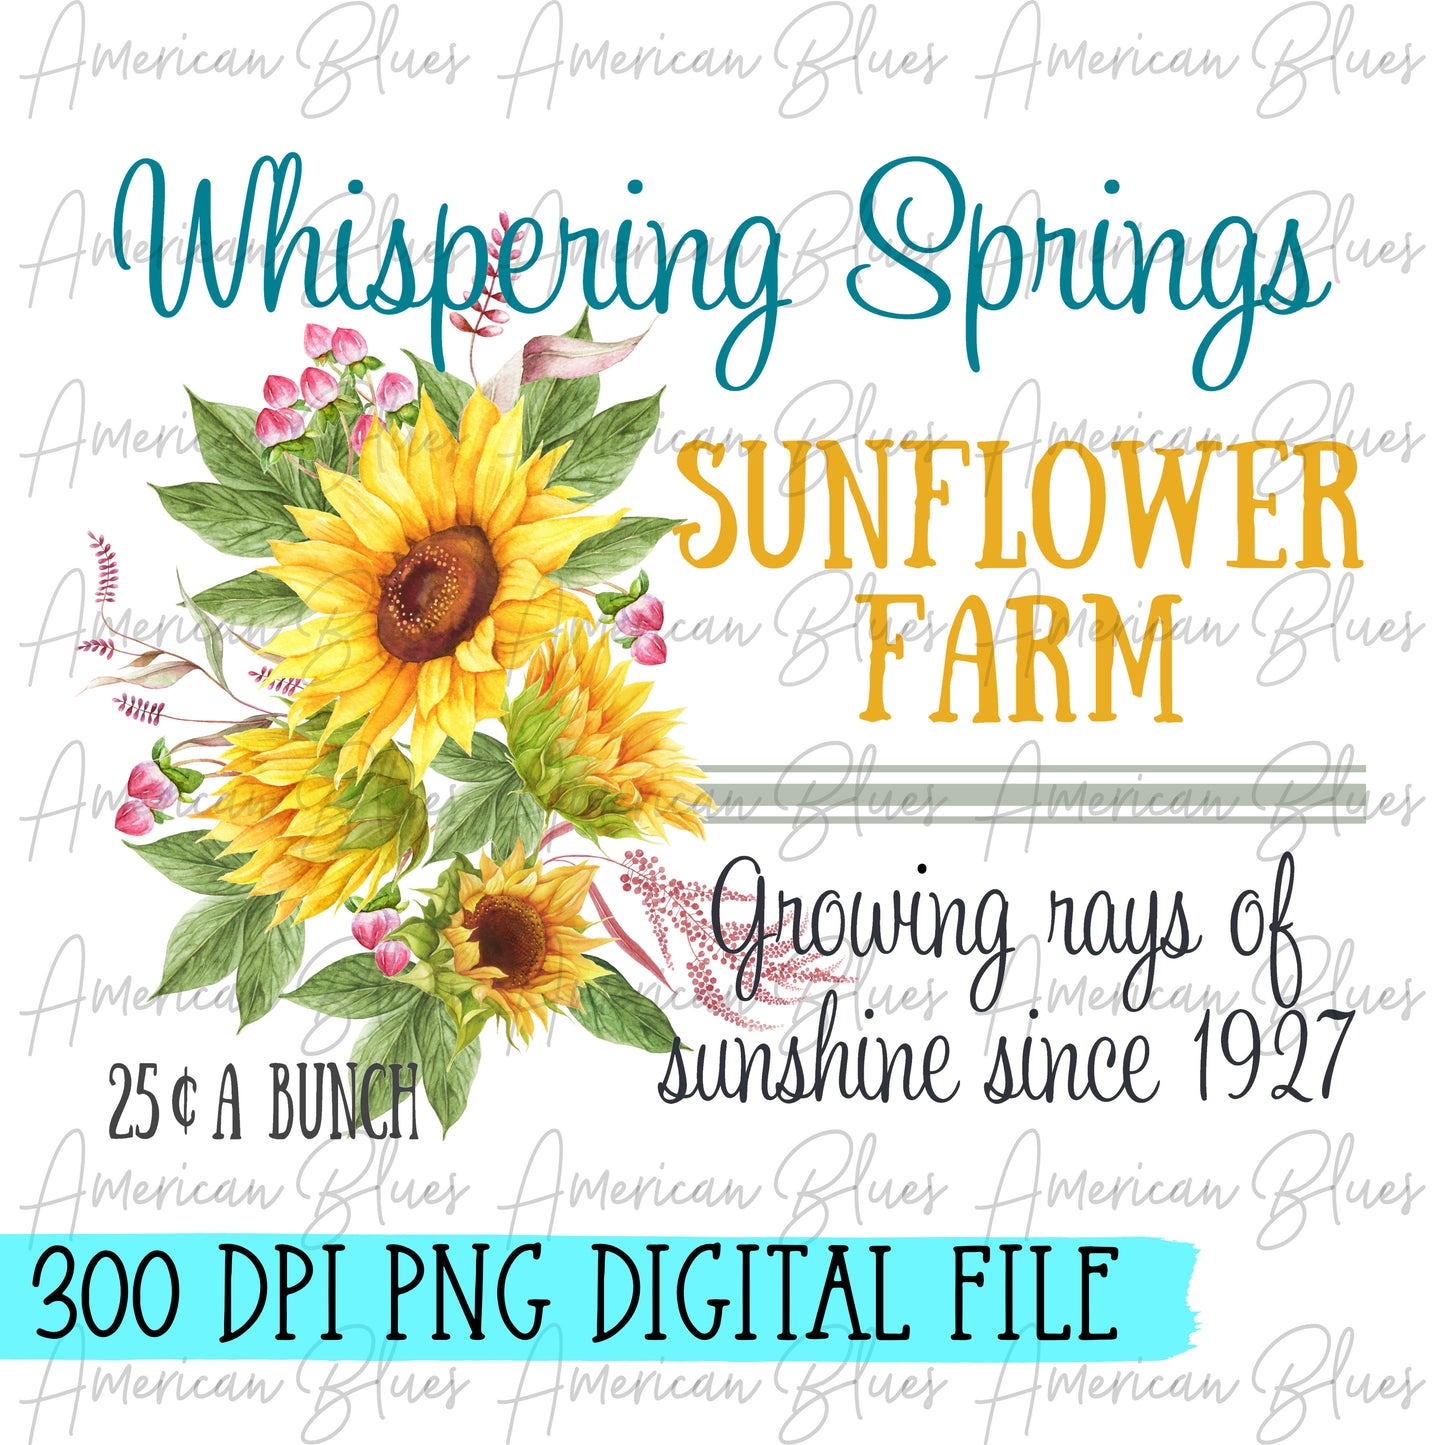 Whispering Springs sunflower farm DIGITAL